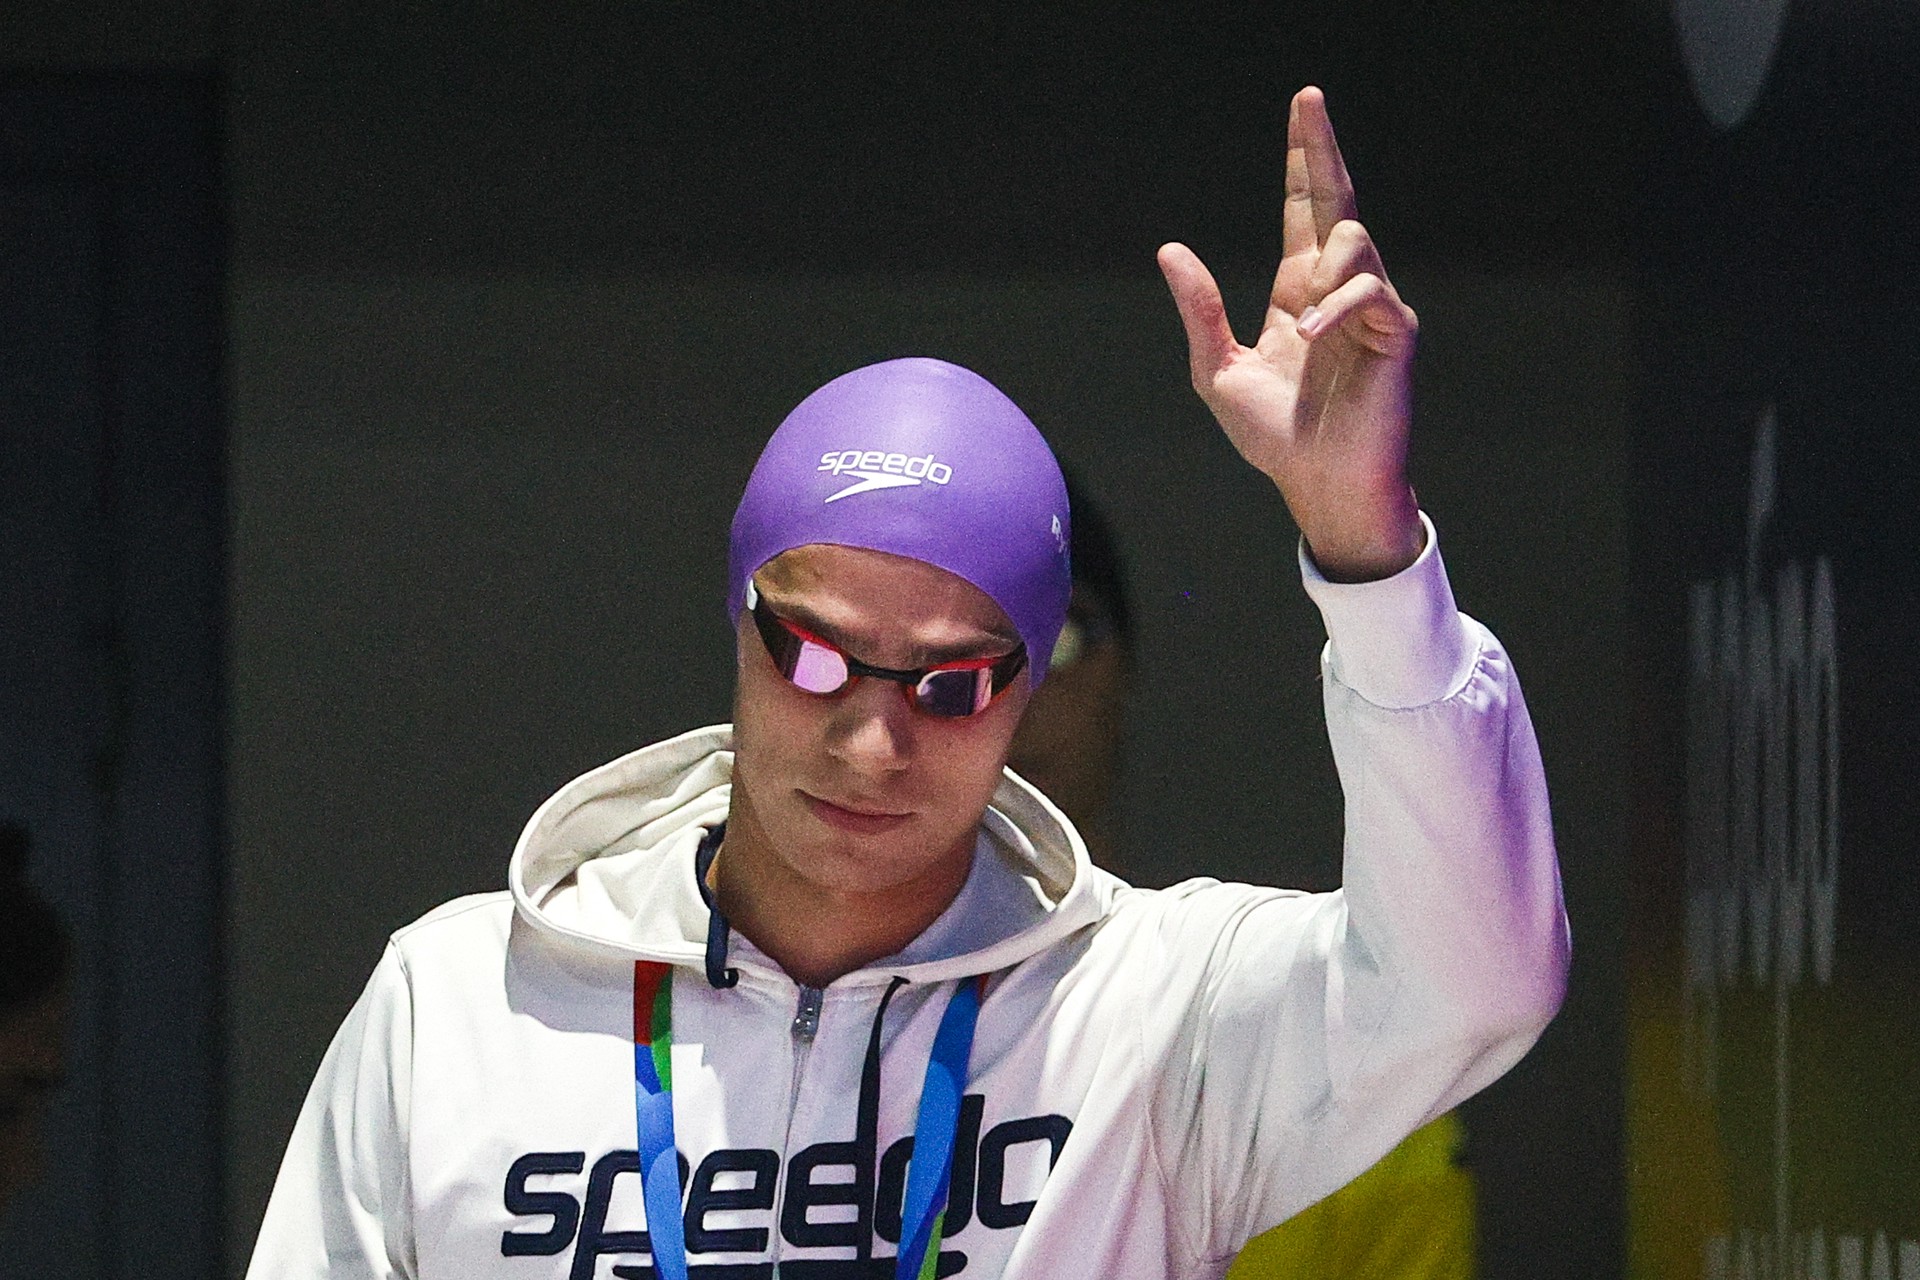 Париж отменяется: почему пловец Рылов первый объявил бойкот Олимпиаде